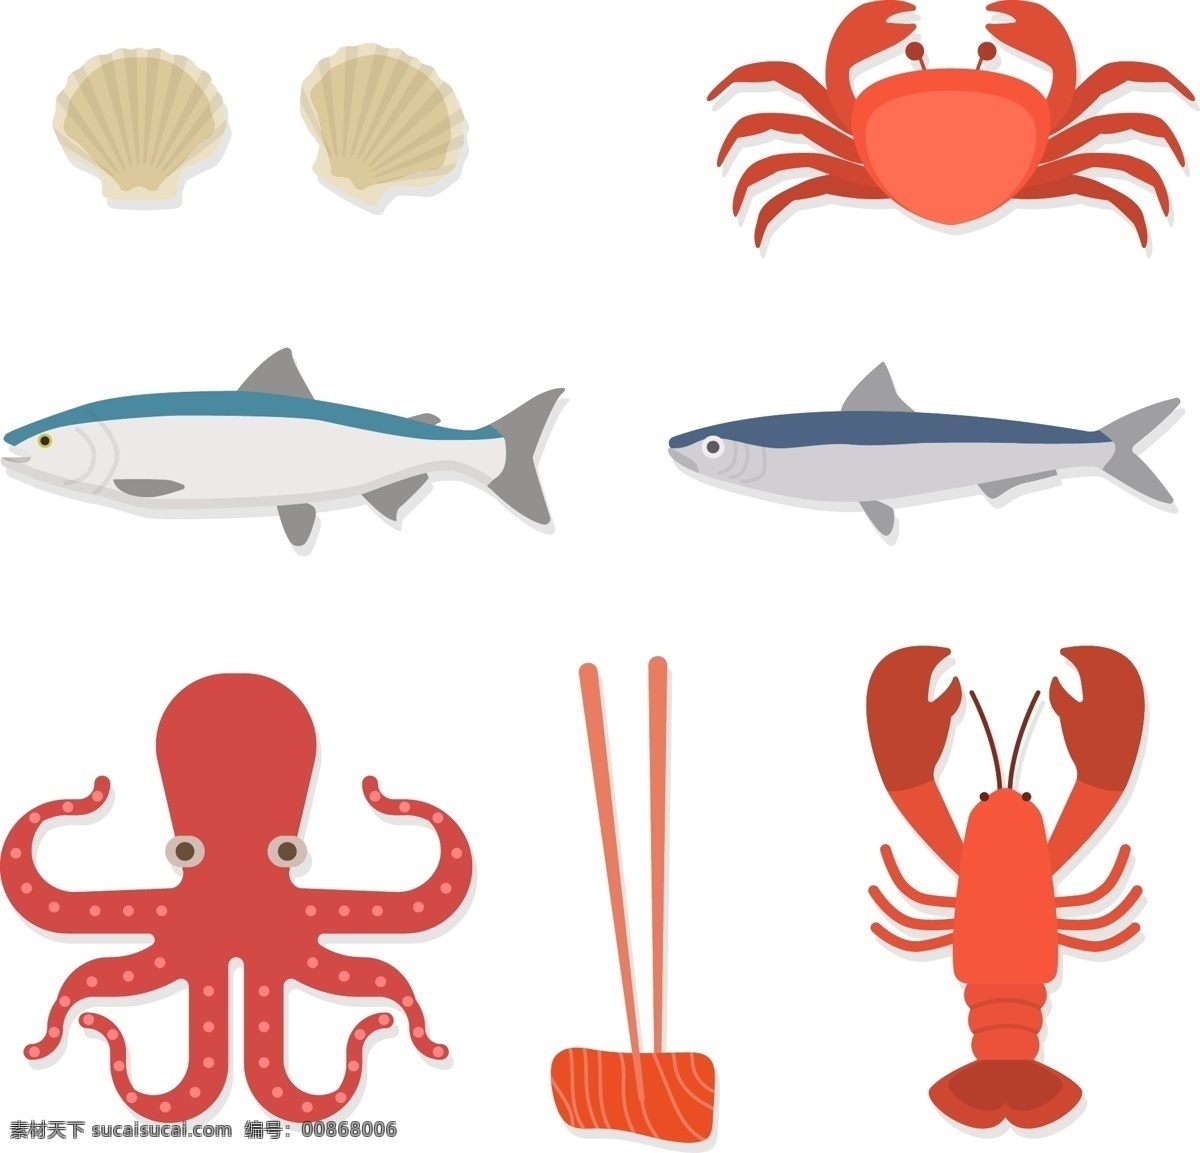 矢量 扁平 海洋生物 贝壳 扁平化 龙虾 螃蟹 矢量食物 矢量素材 手绘 手绘插画 手绘食物 鱼 章鱼